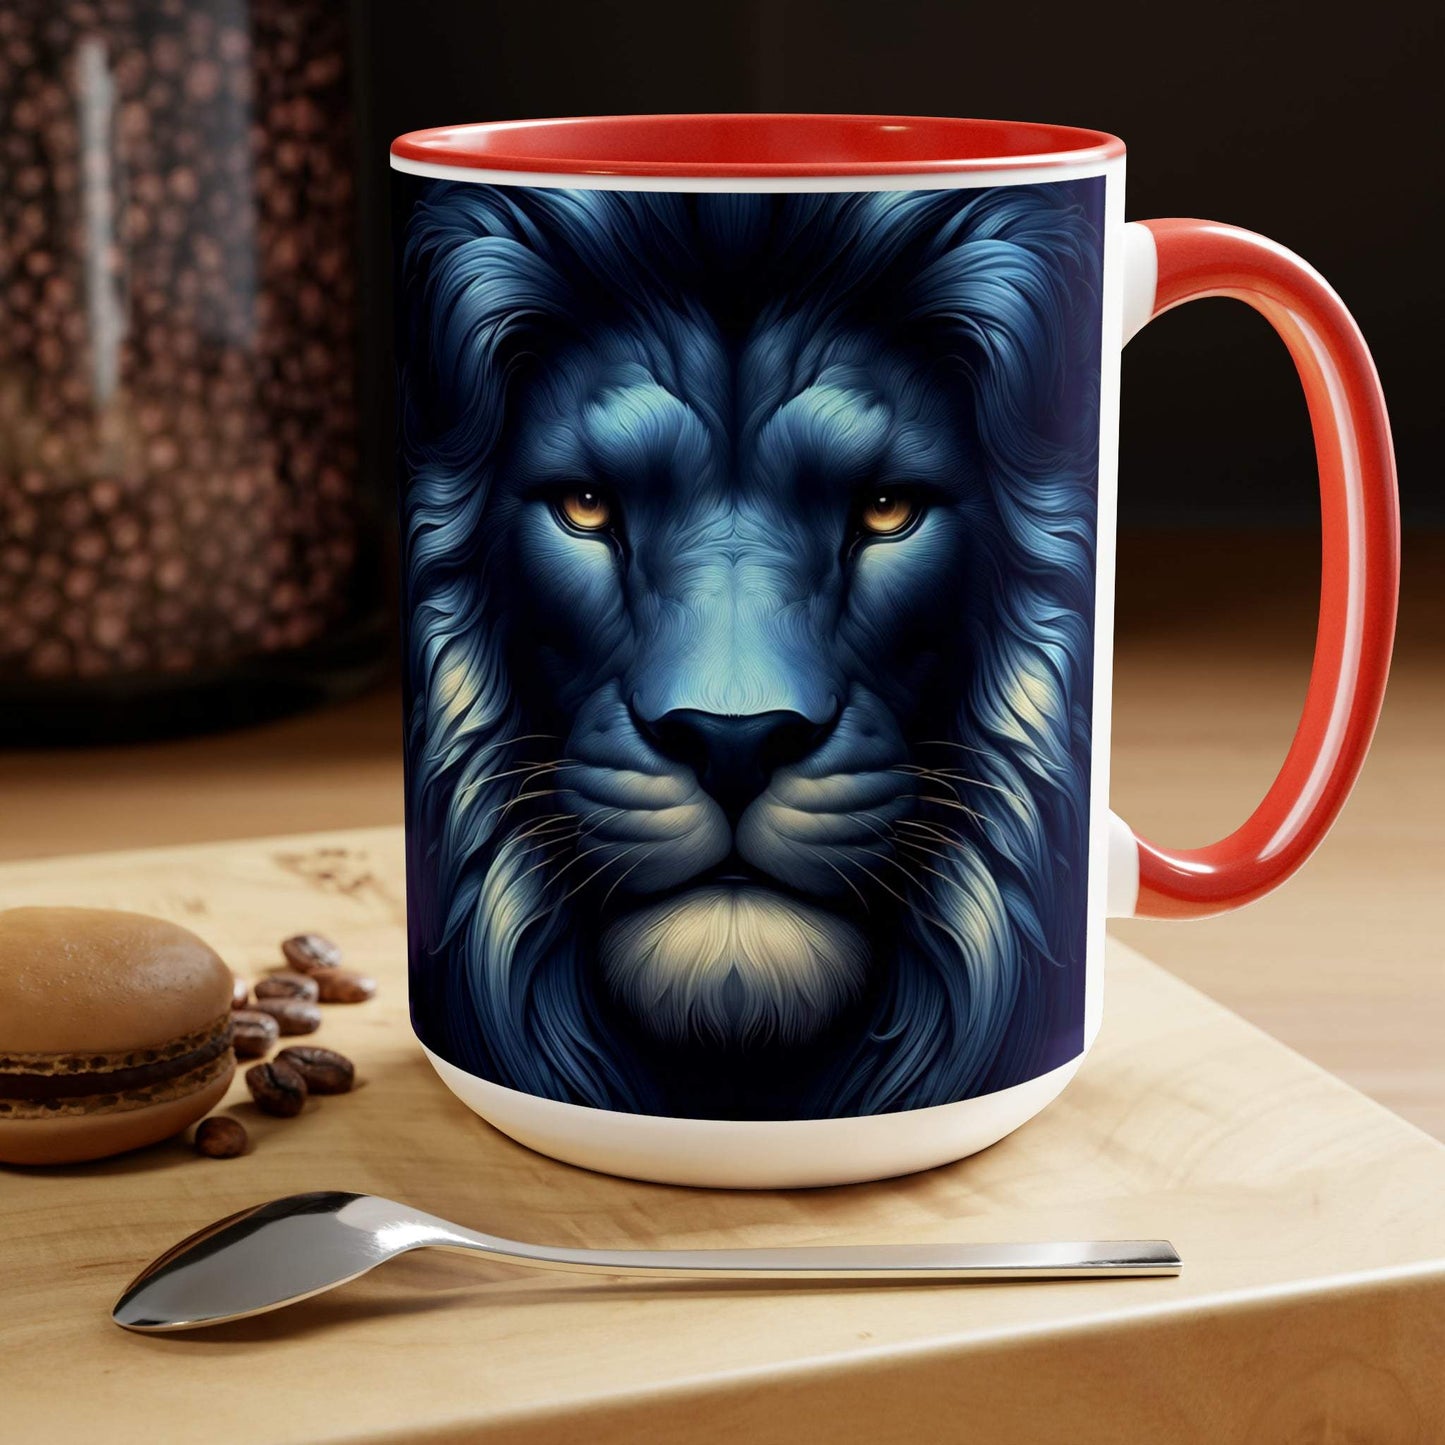 lion mug, lion coffee mug, animal coffee mug